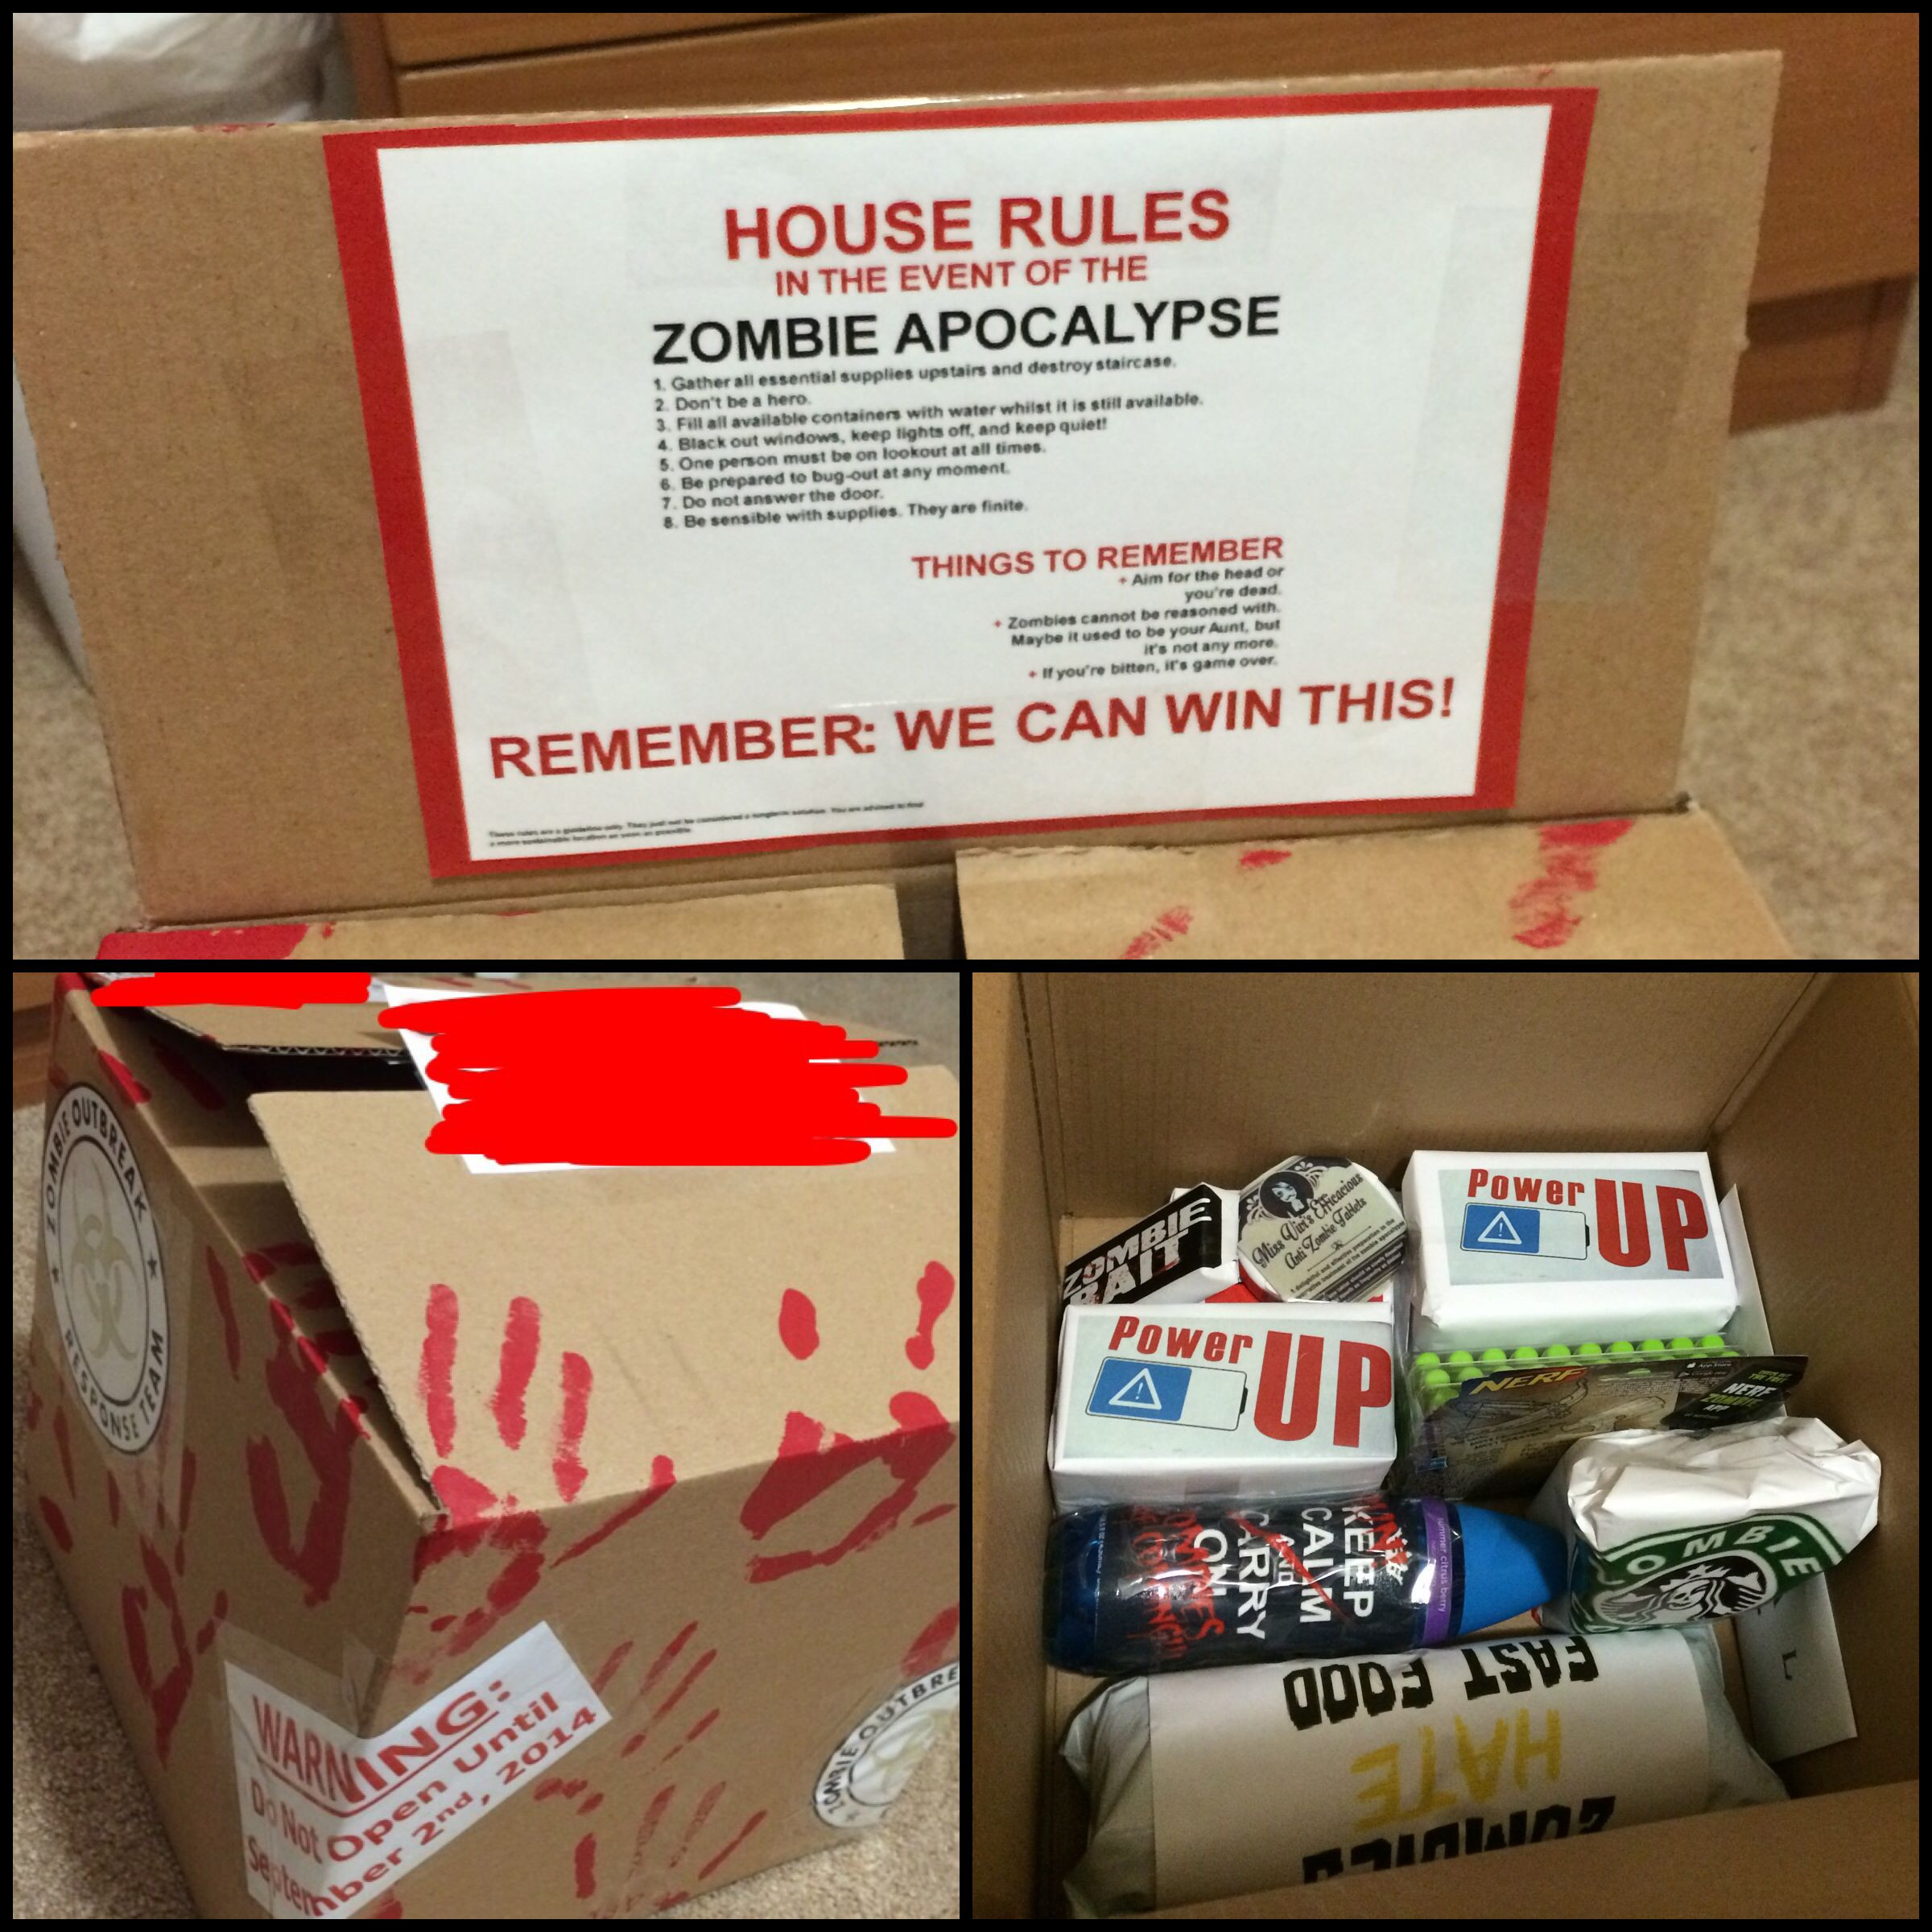 Best ideas about DIY Zombie Survival Kit
. Save or Pin Zombie Survival Kits on Pinterest Now.